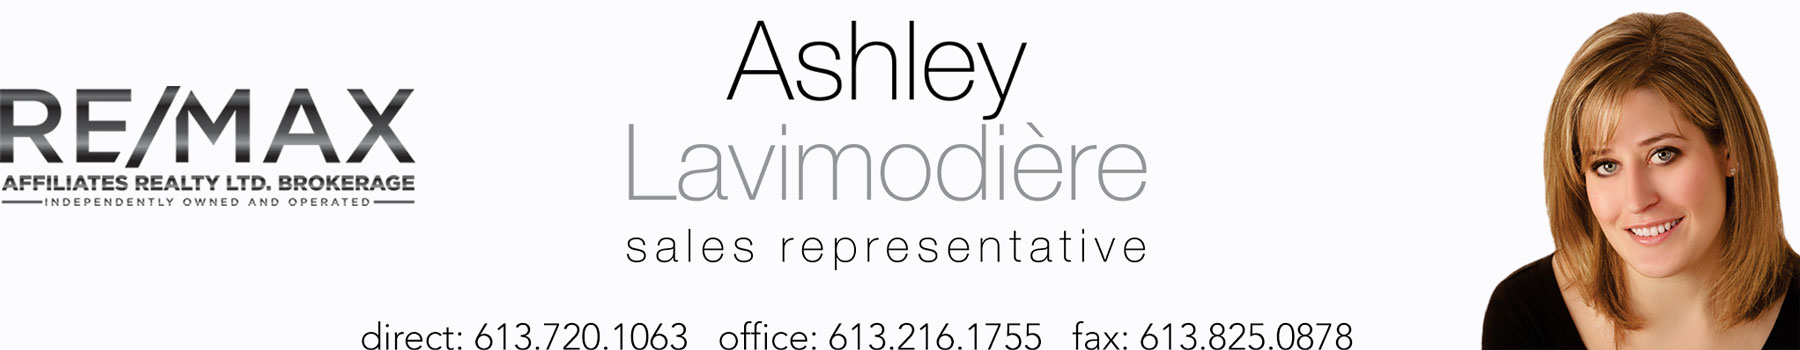 Ashley Lavimodière Graphic Header